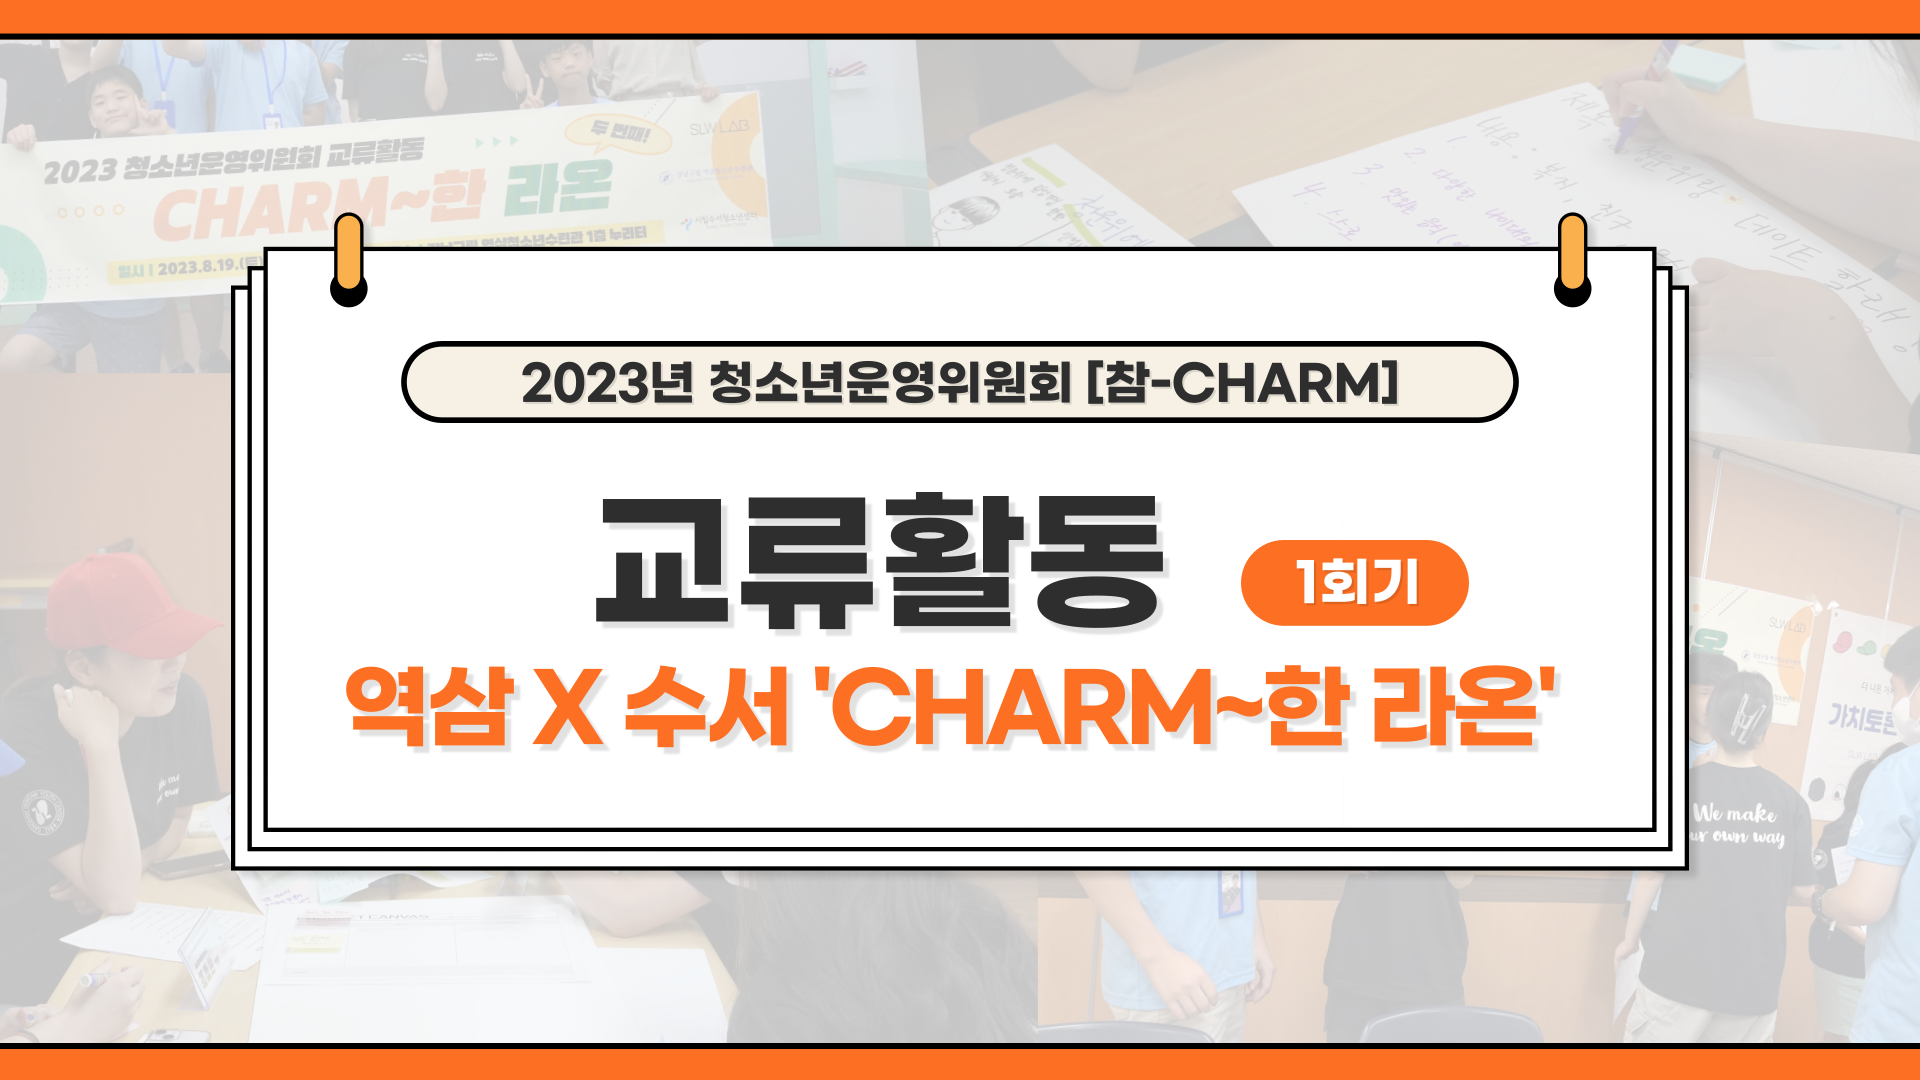 2023년 청소년운영위원회 교류활동 [CHARM~한 라온] (1회기)